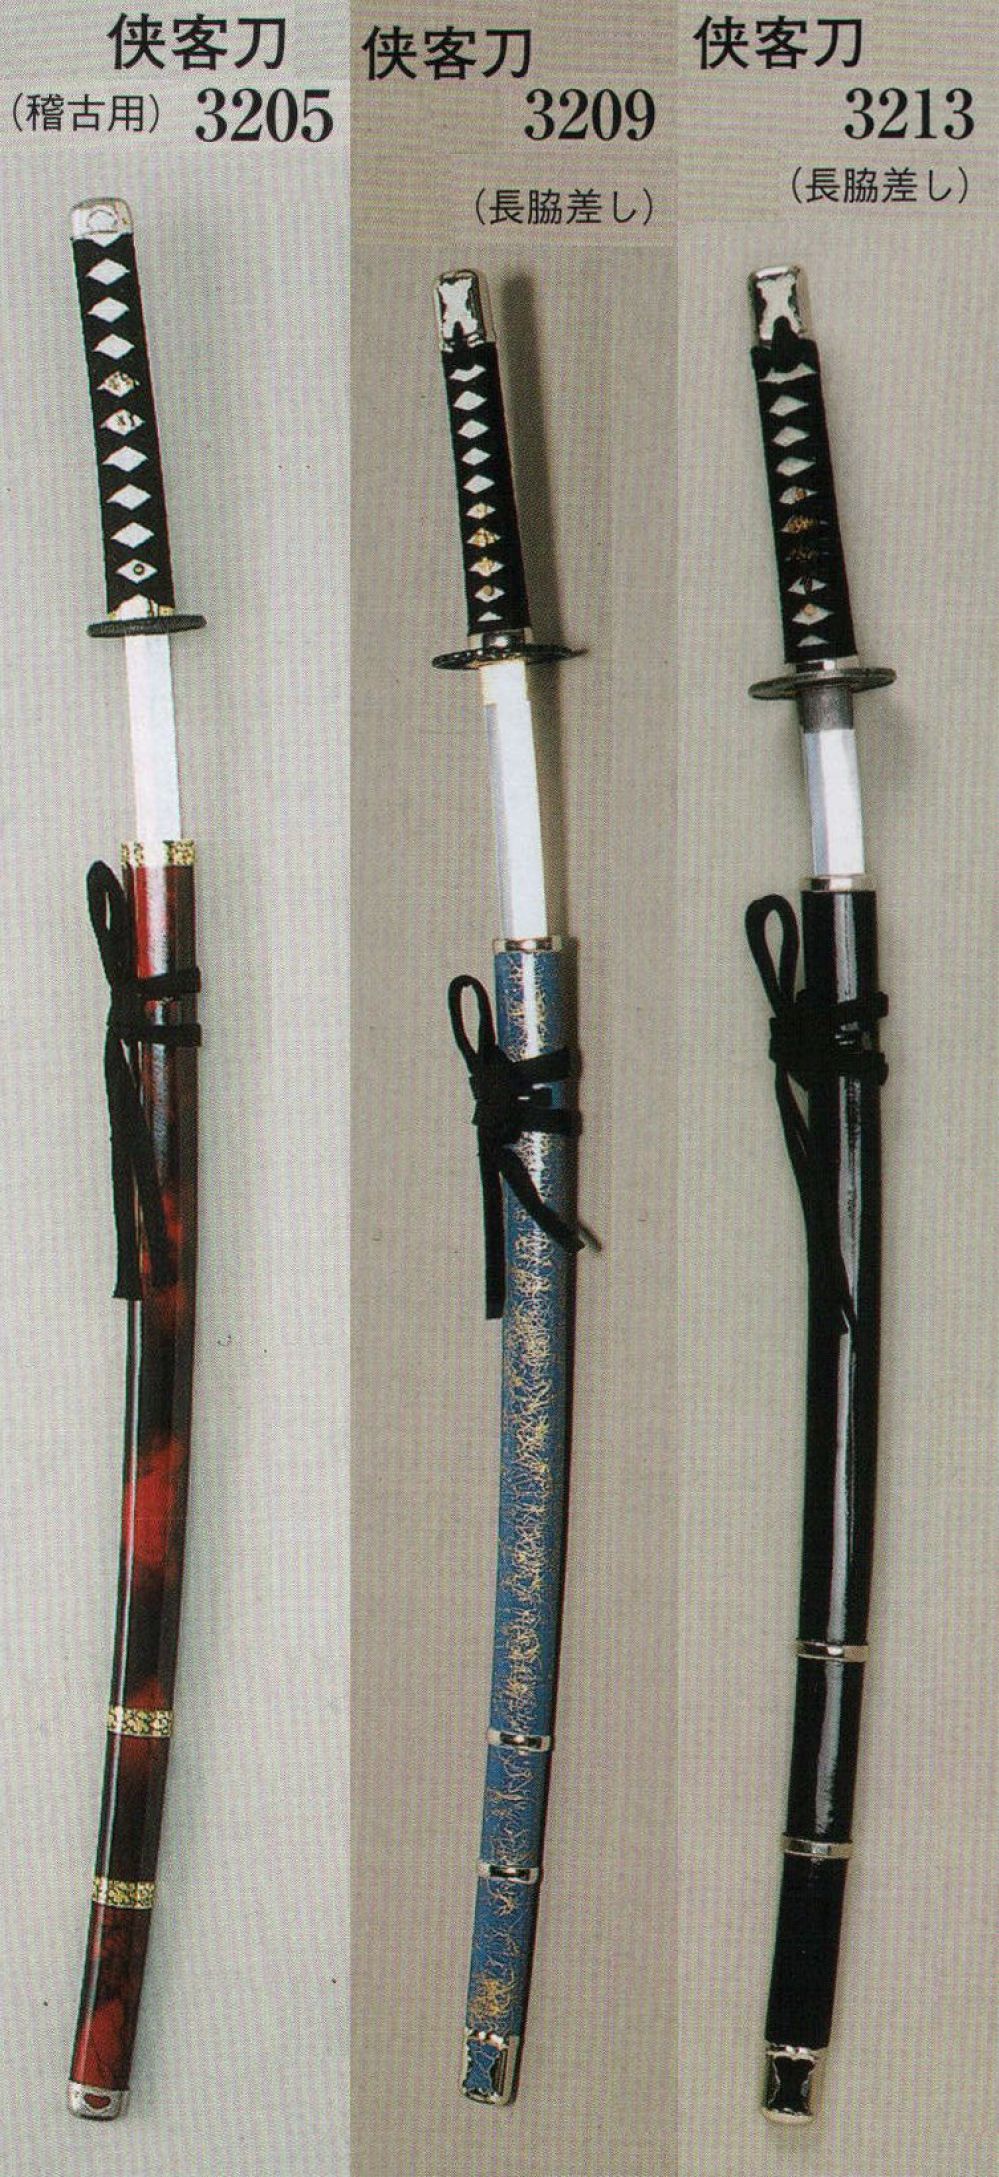 祭り用品jp 侠客刀（長脇差し/模造刀） 日本の歳時記 3213 祭り用品の